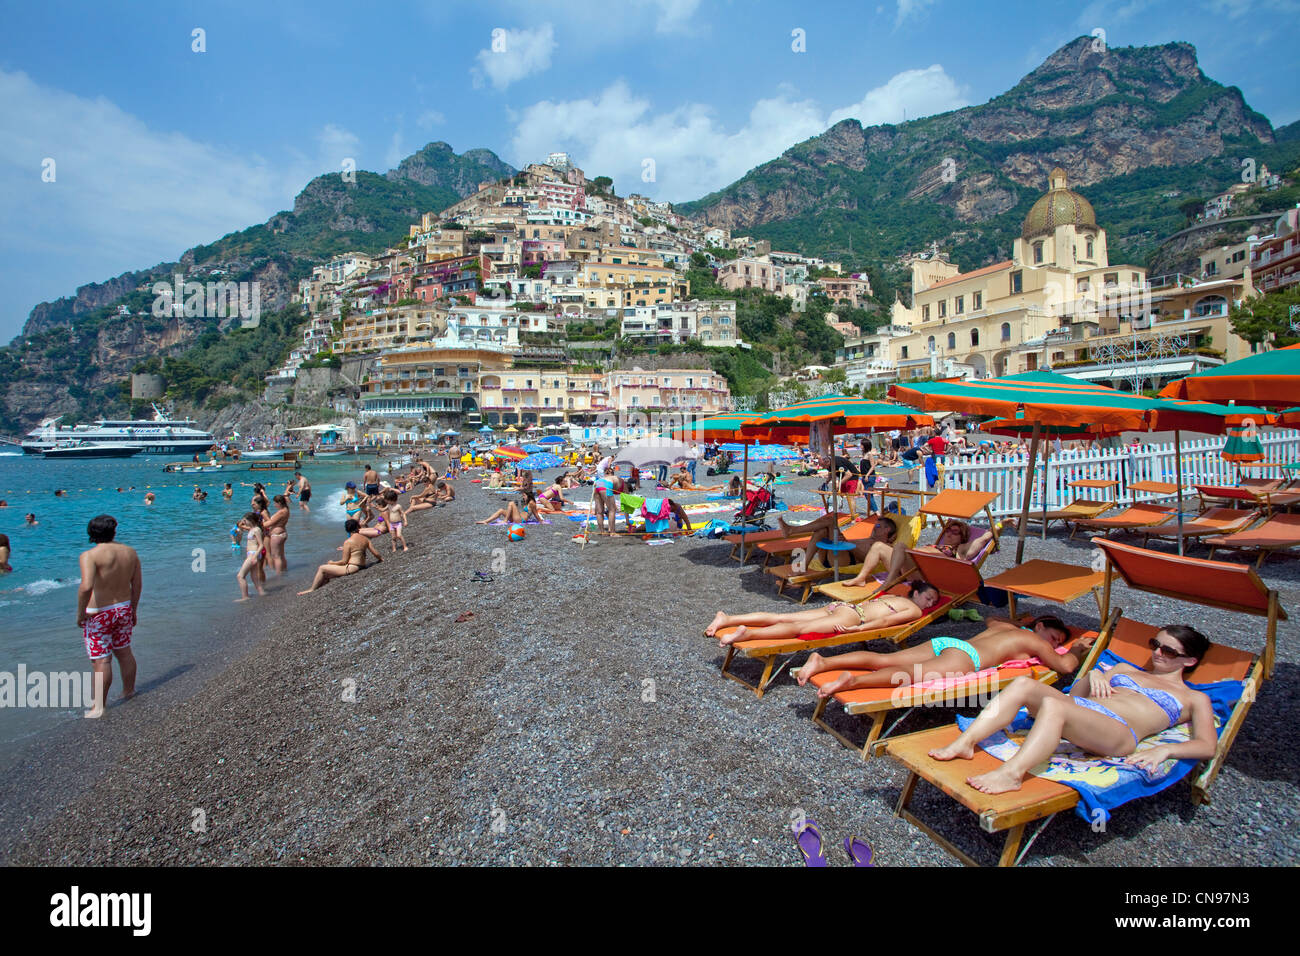 La gente en la playa del pueblo de Positano, Amalfi, sitio del Patrimonio Mundial de la Unesco, la Región de Campania, Italia, el mar Mediterráneo, Europa Foto de stock